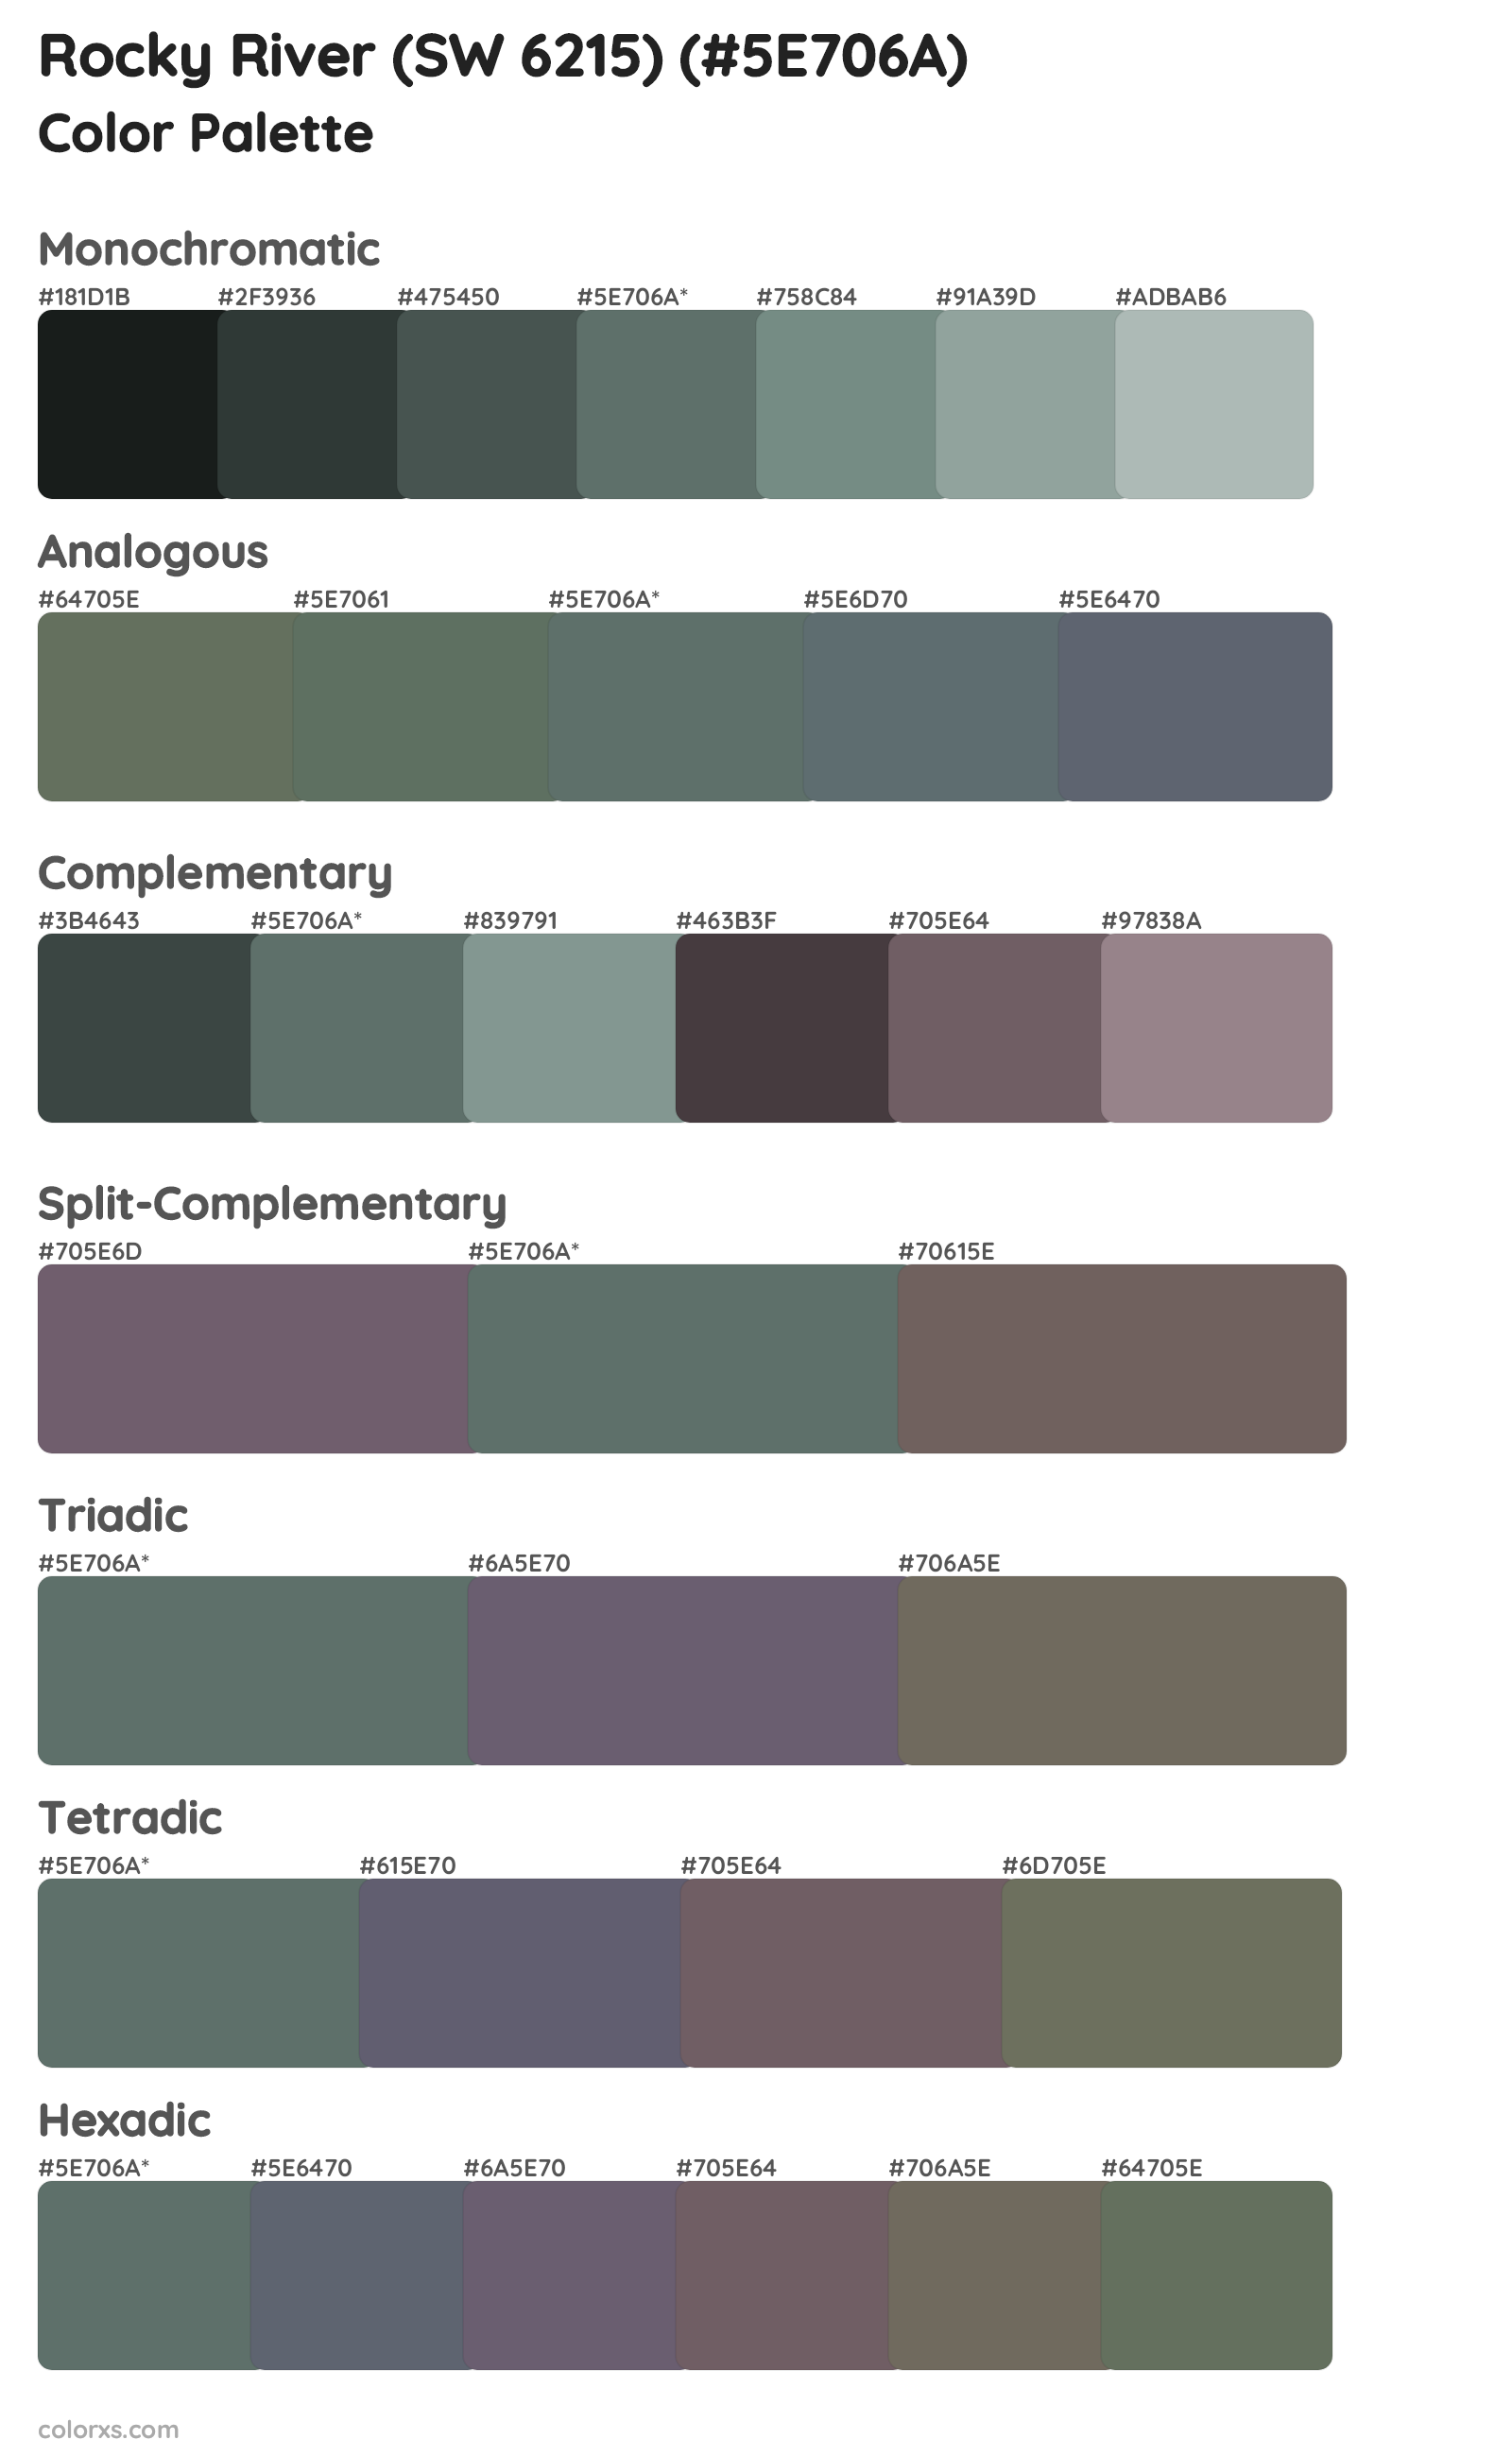 Rocky River (SW 6215) Color Scheme Palettes